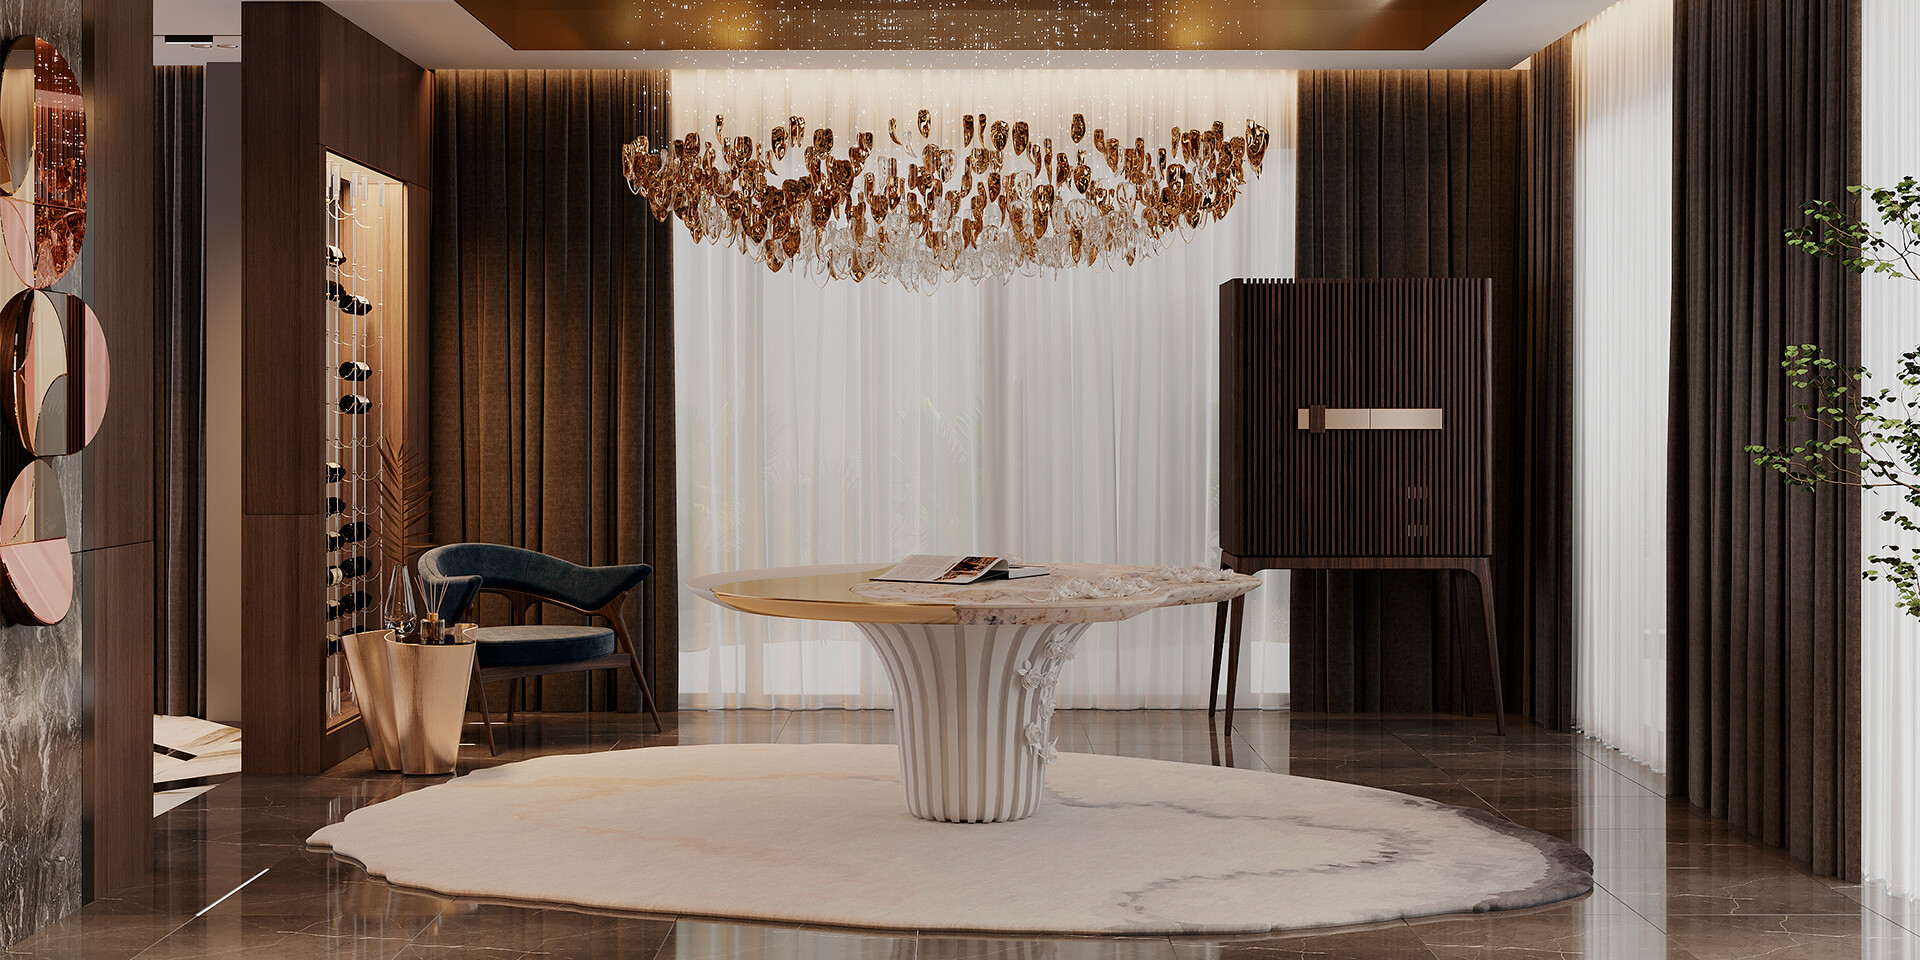 CARDOSAS PEDESTAL TABLE Contemporary and Luxurious Room ALMA de LUCE